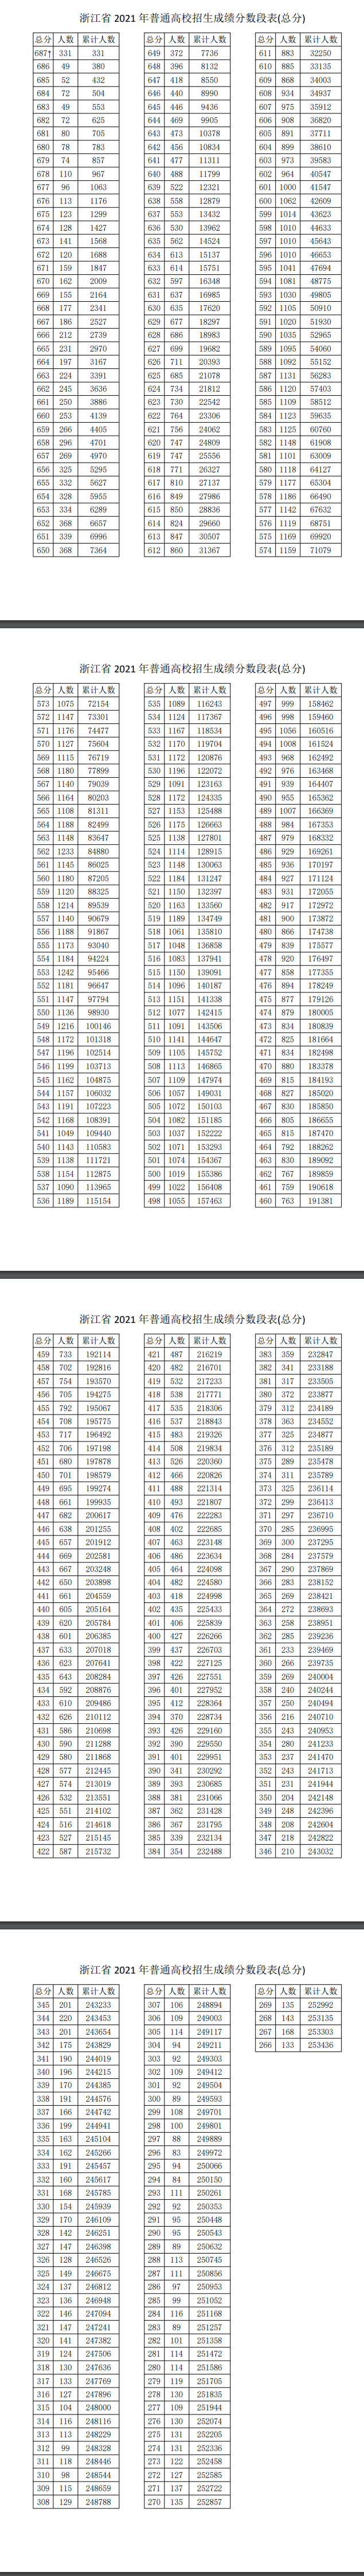 2022浙江高考总成绩一分一段表公布